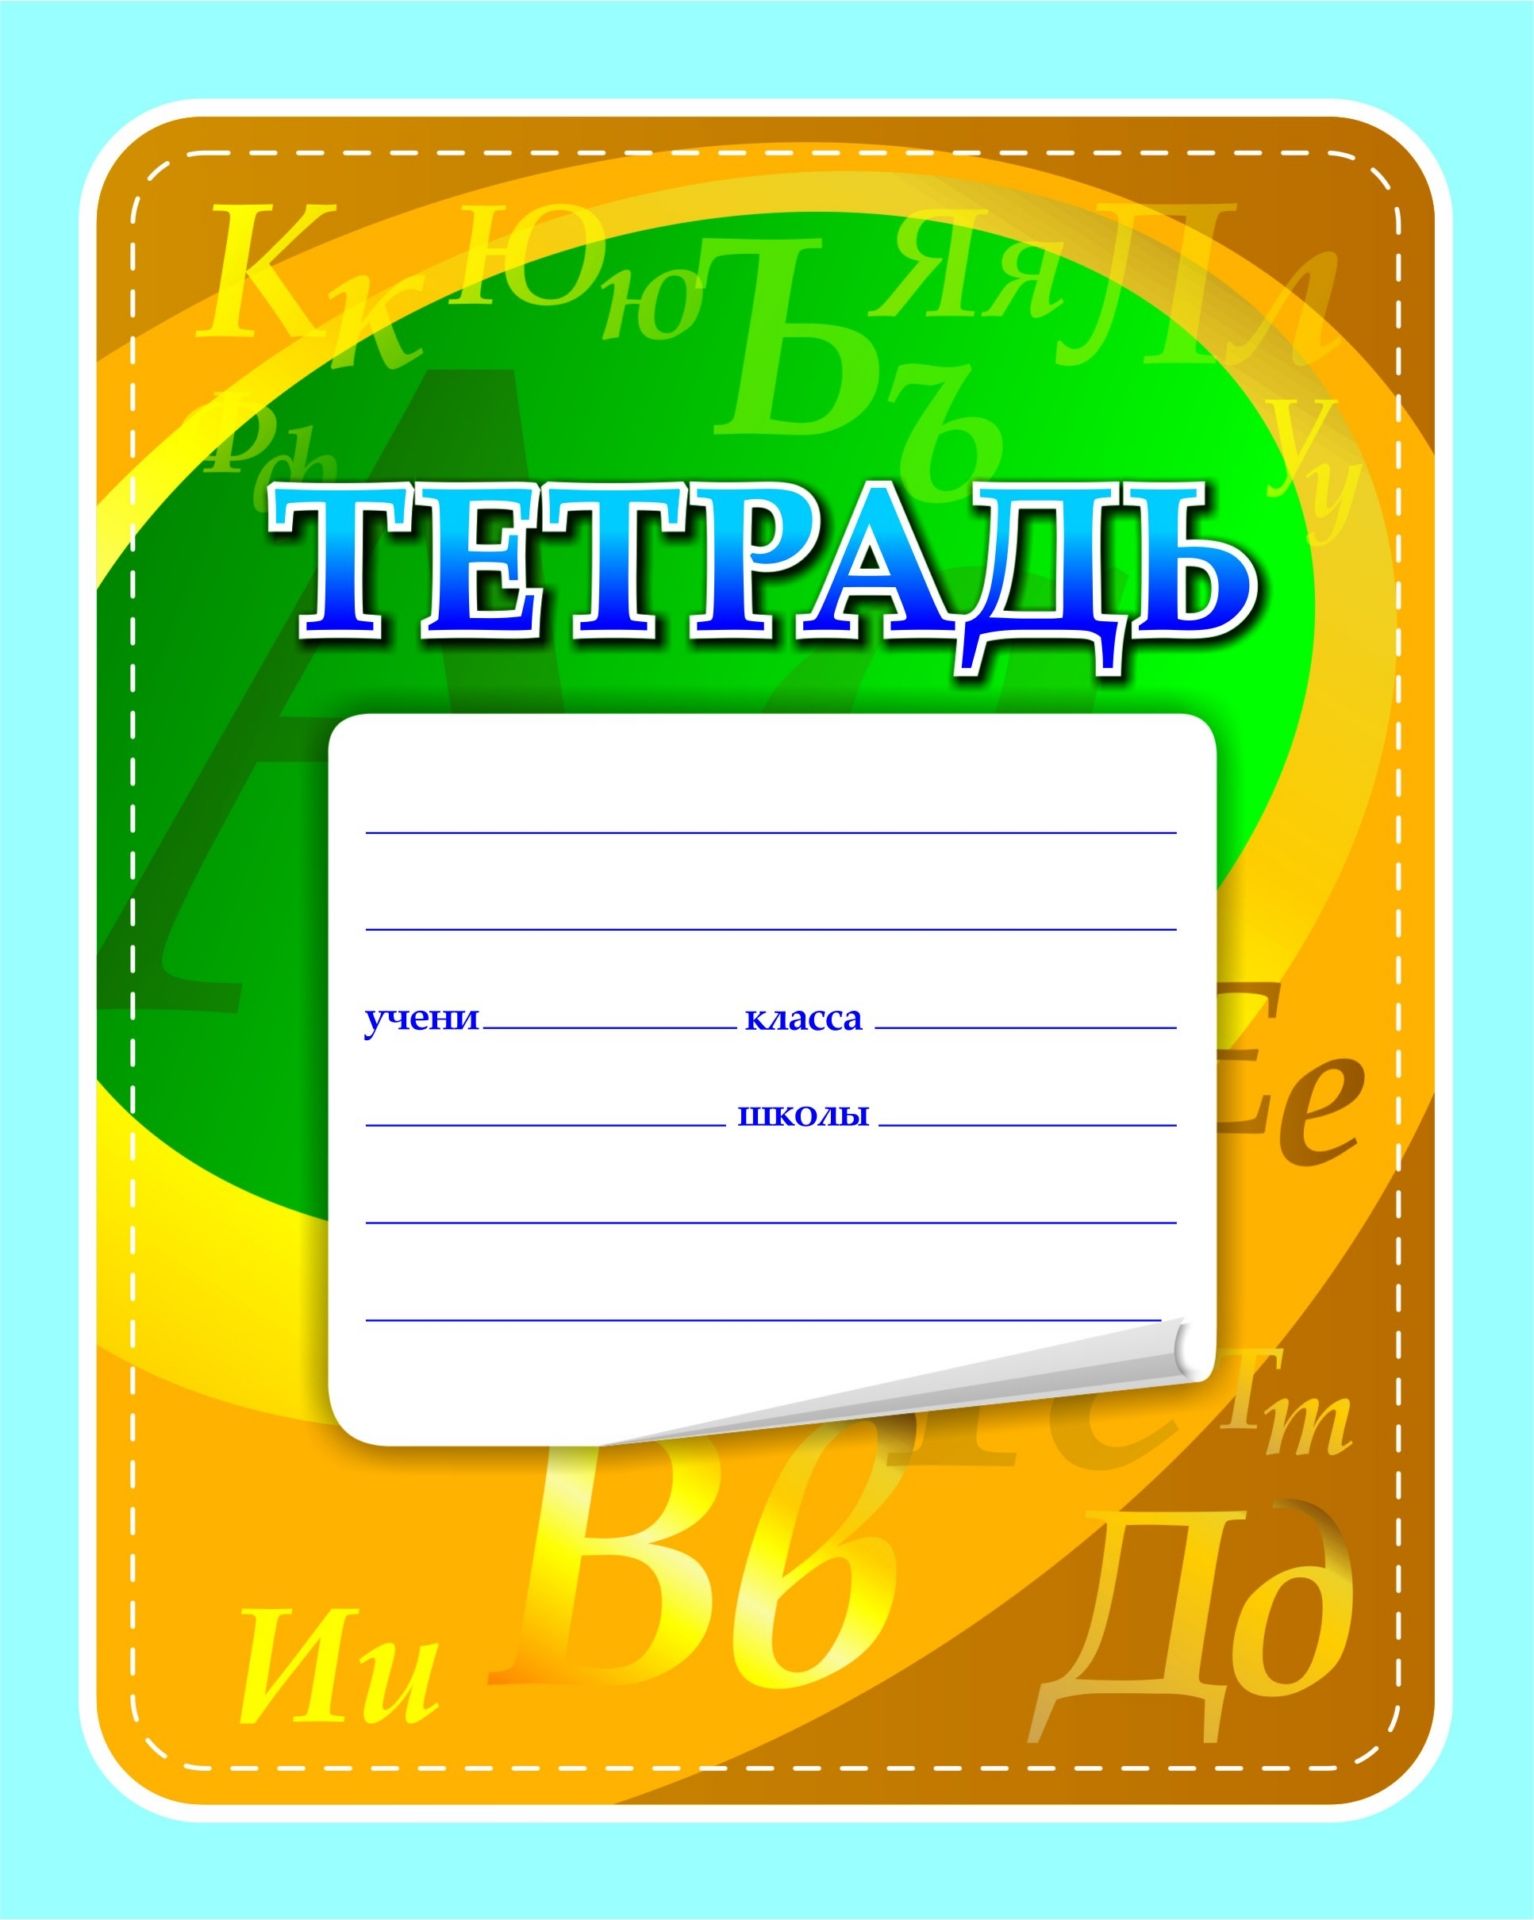 Тетрадь по русскому языку (с грамматикой)